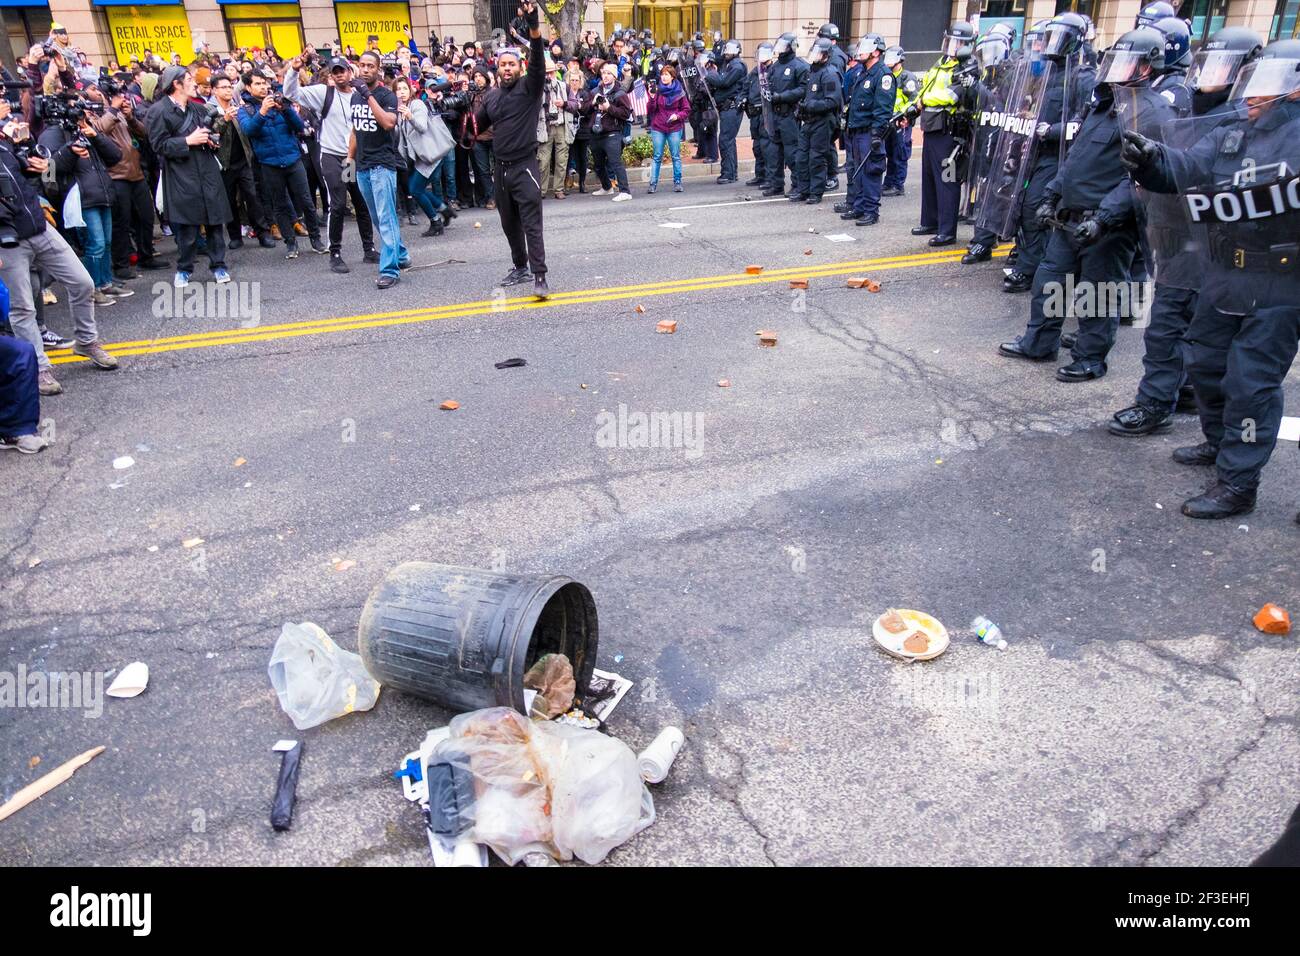 Polizia e manifestanti in rivolta con rifiuti per strada. All'insediamento del presidente Donald Trump nel 2017 a Washington D.C. Foto Stock